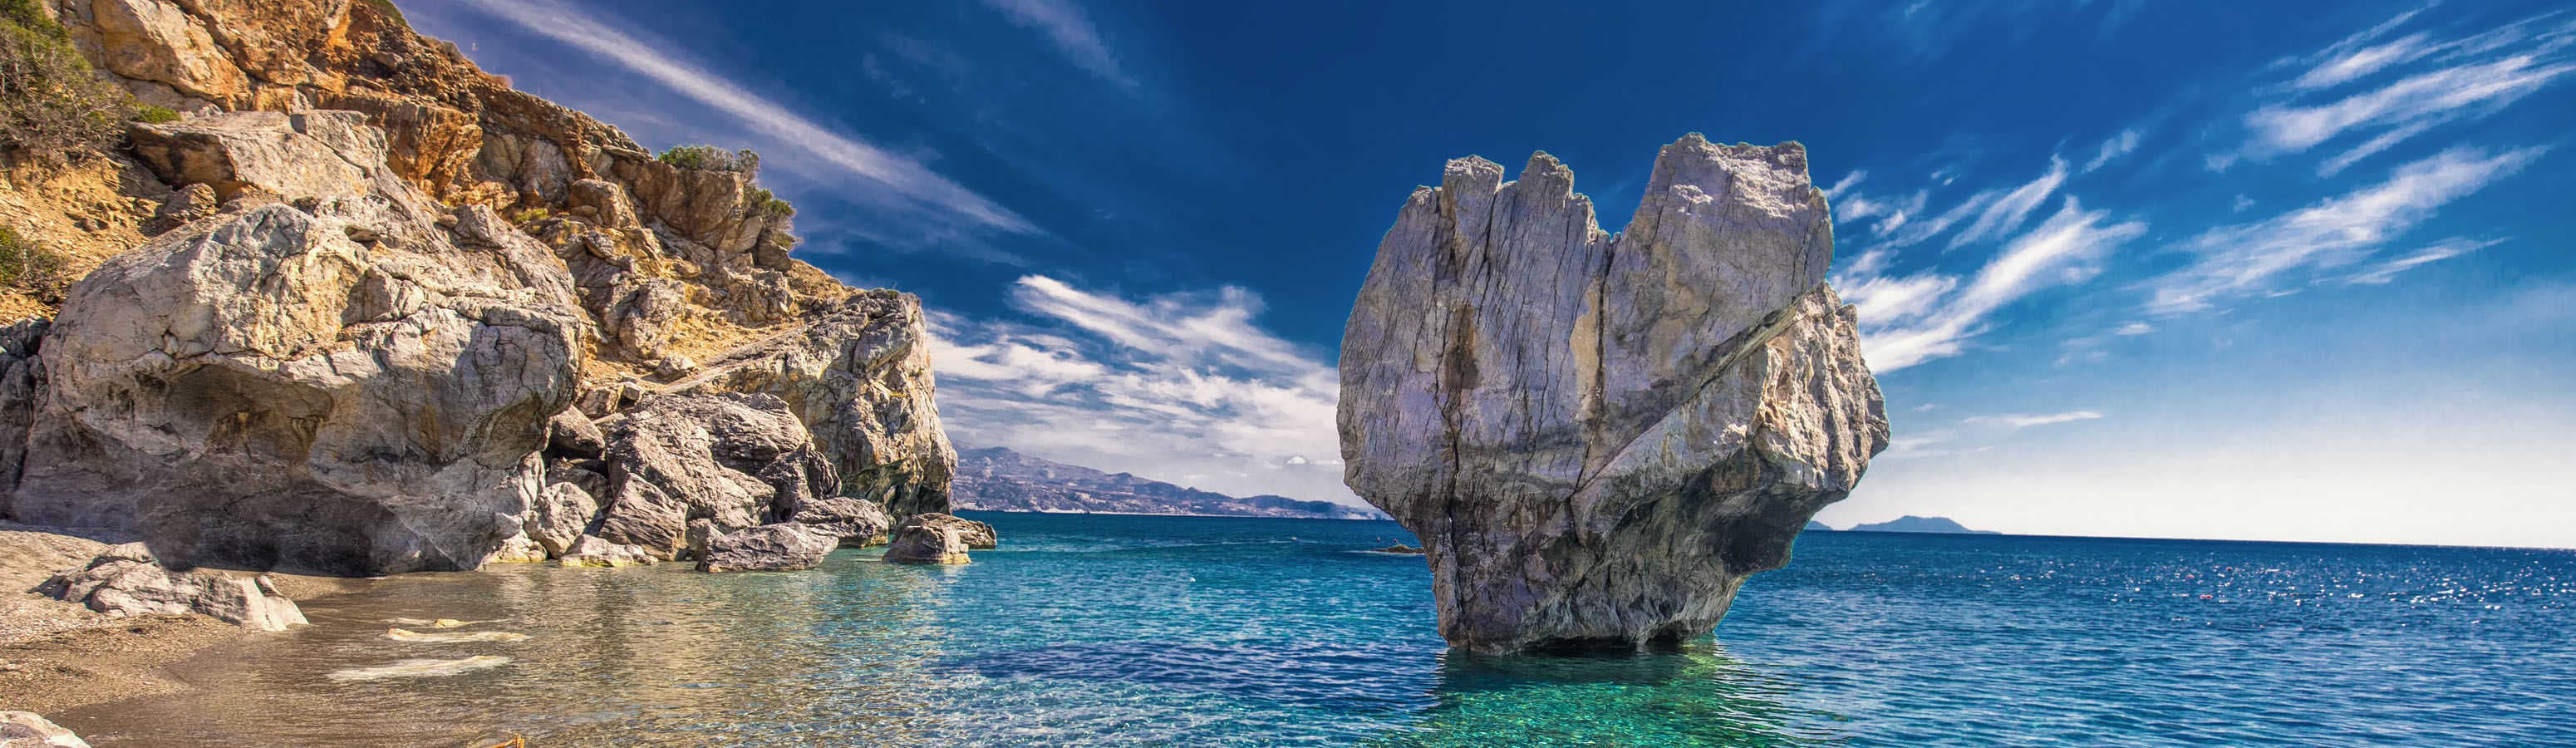 Goditi Creta, un'isola che non dorme mai